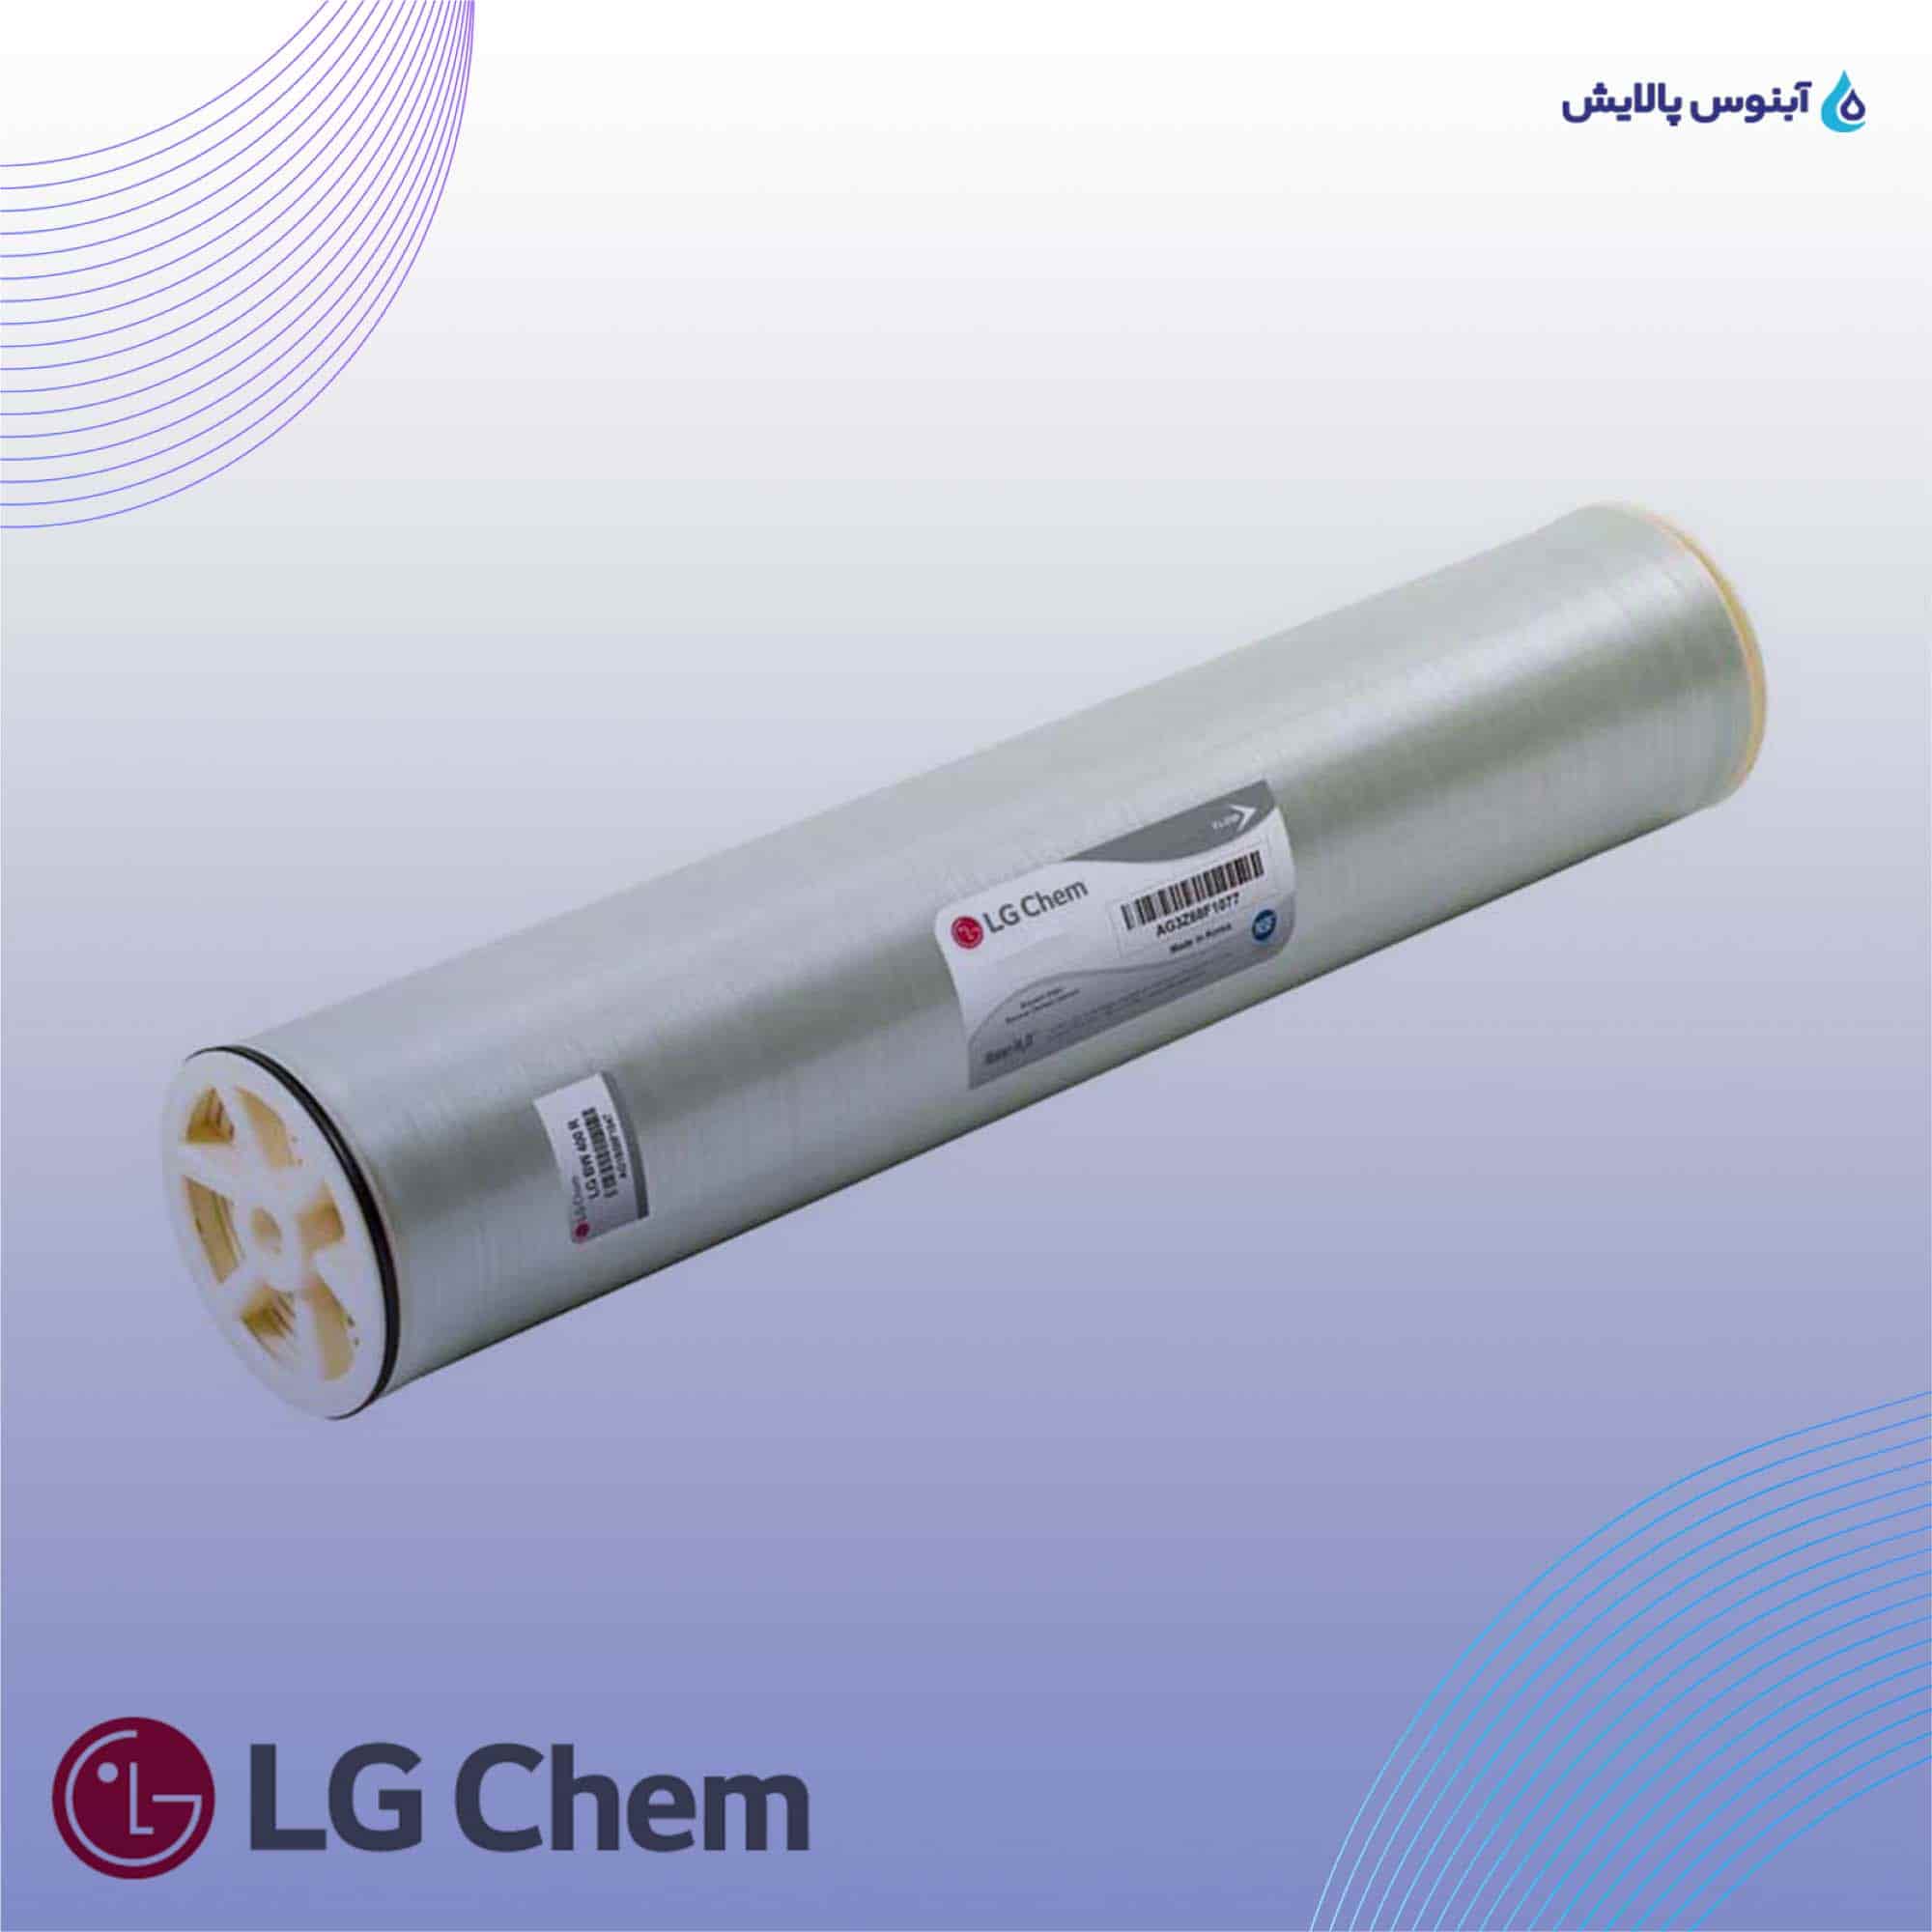 ممبران 8 اینچ ال جی کم (LG Chem) مدل LG BW 400 AFR